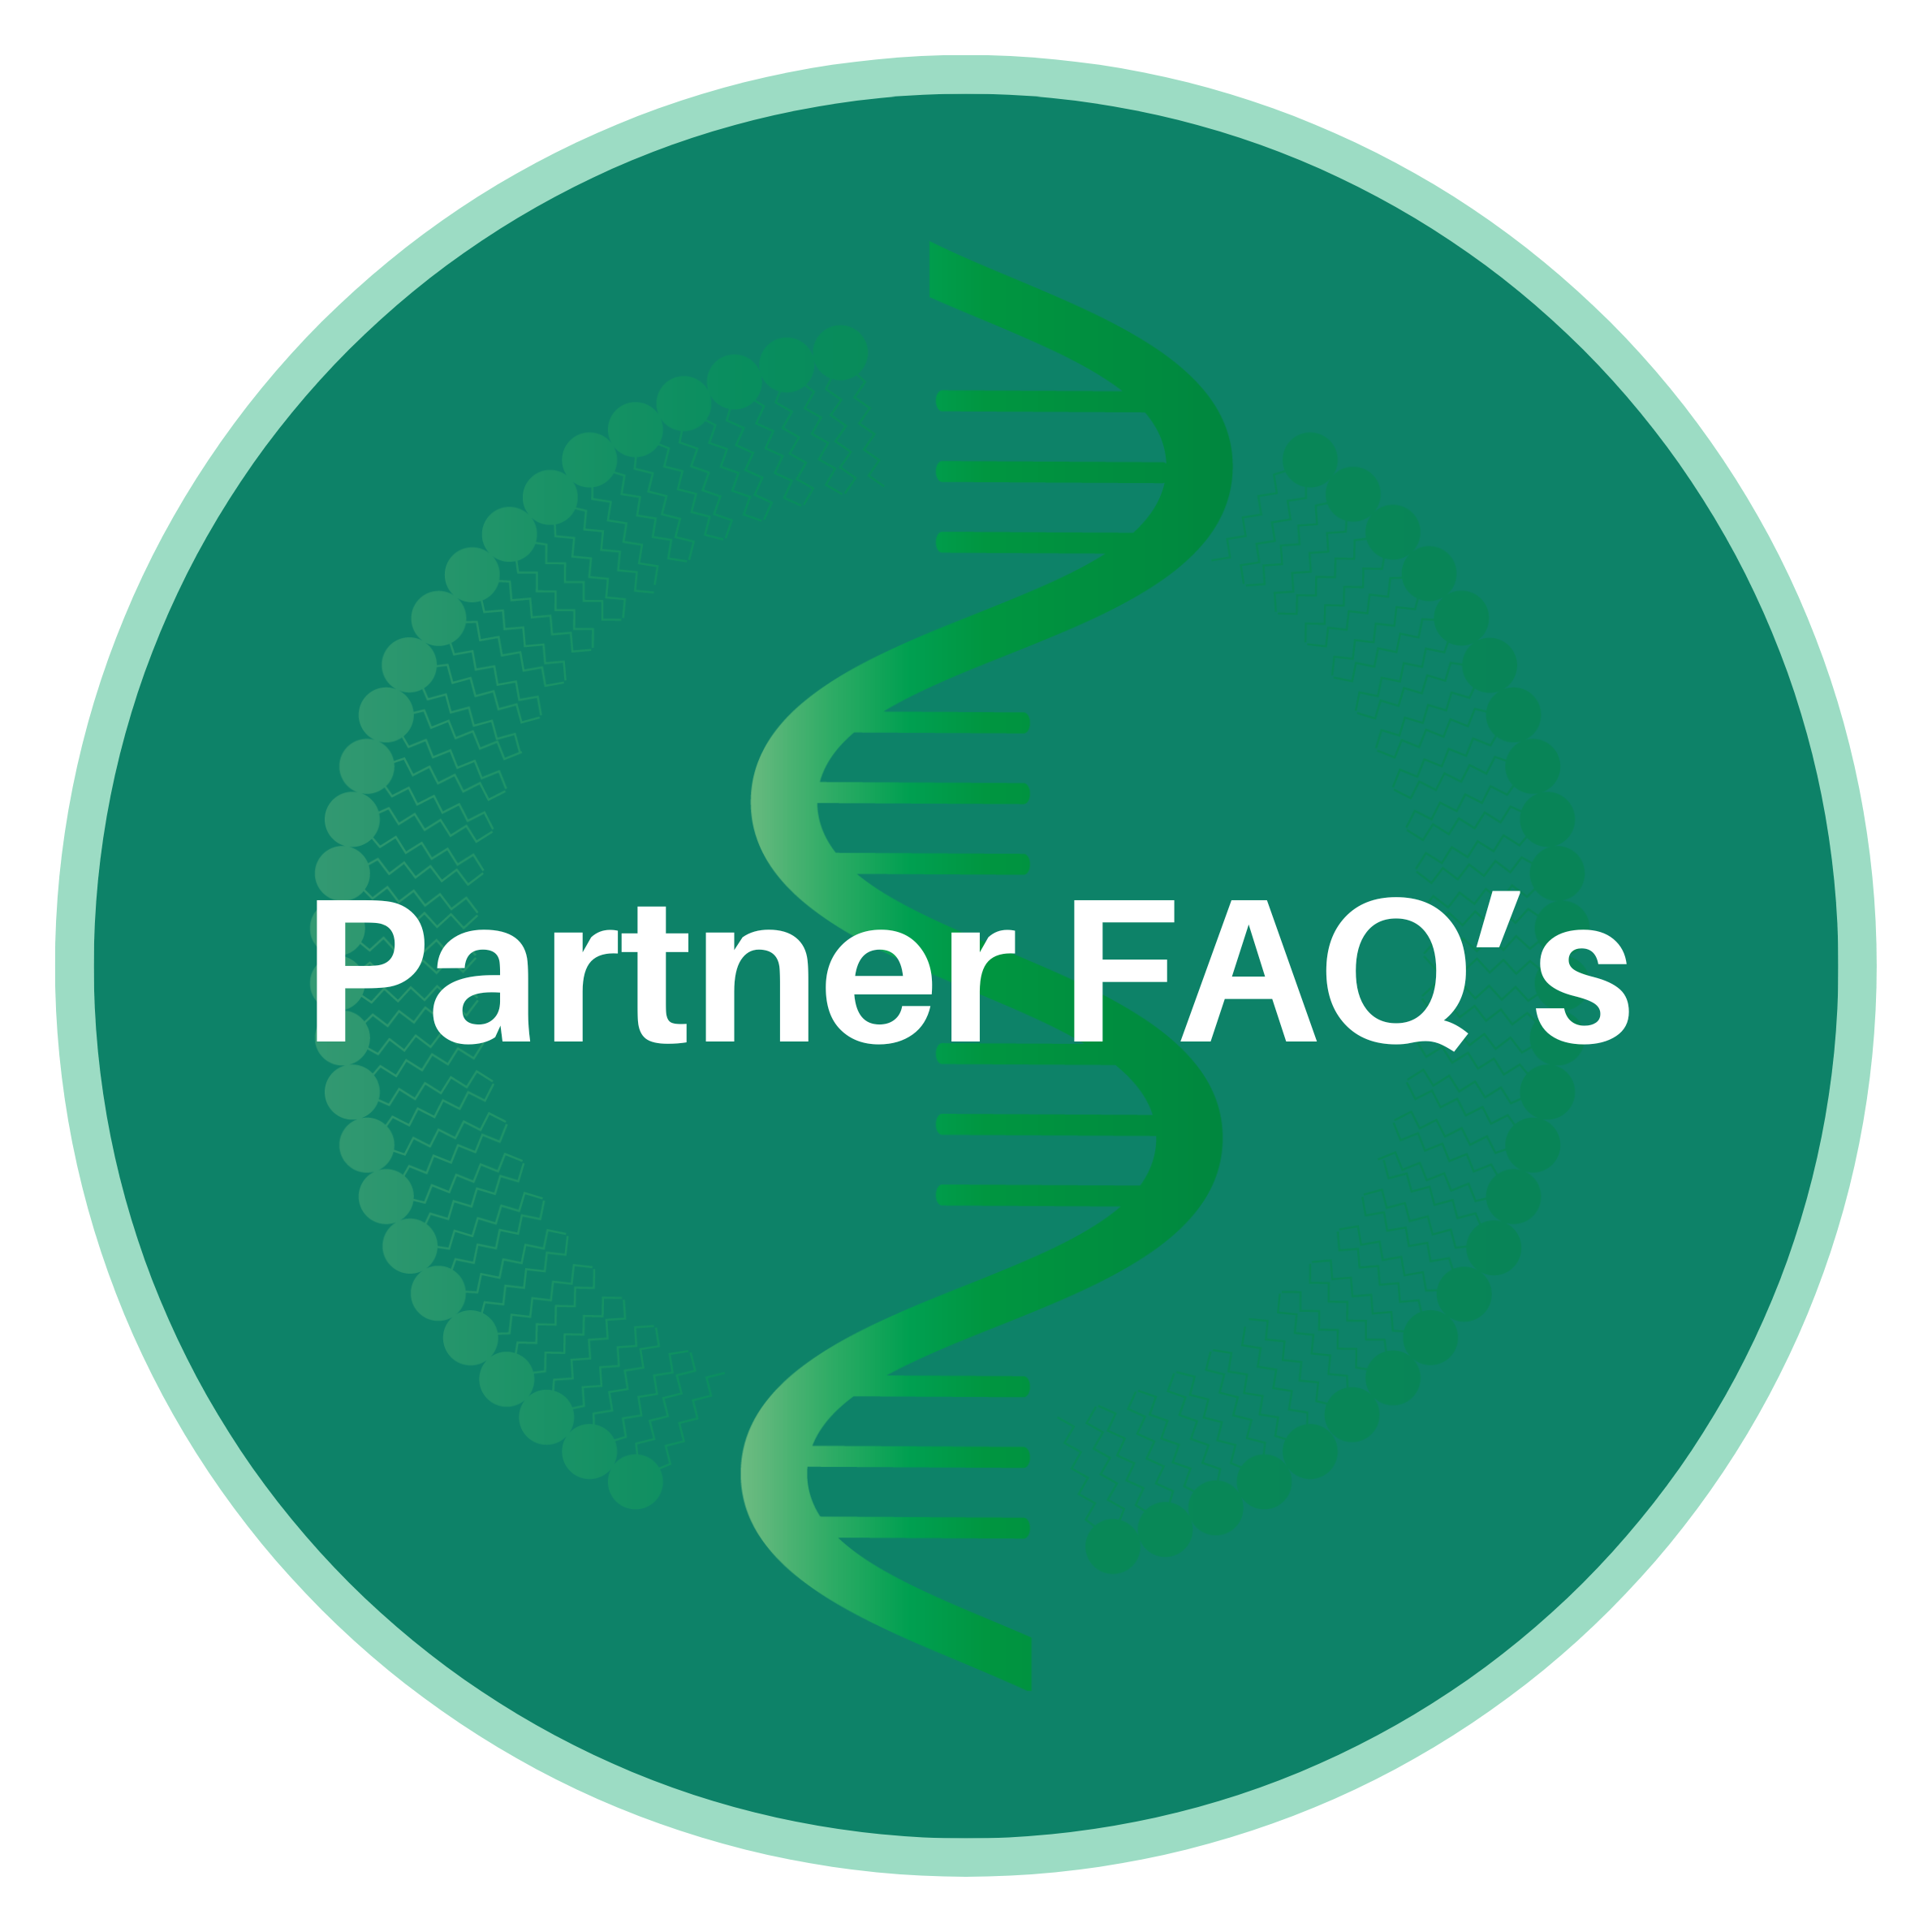 Partner FAQ's Button